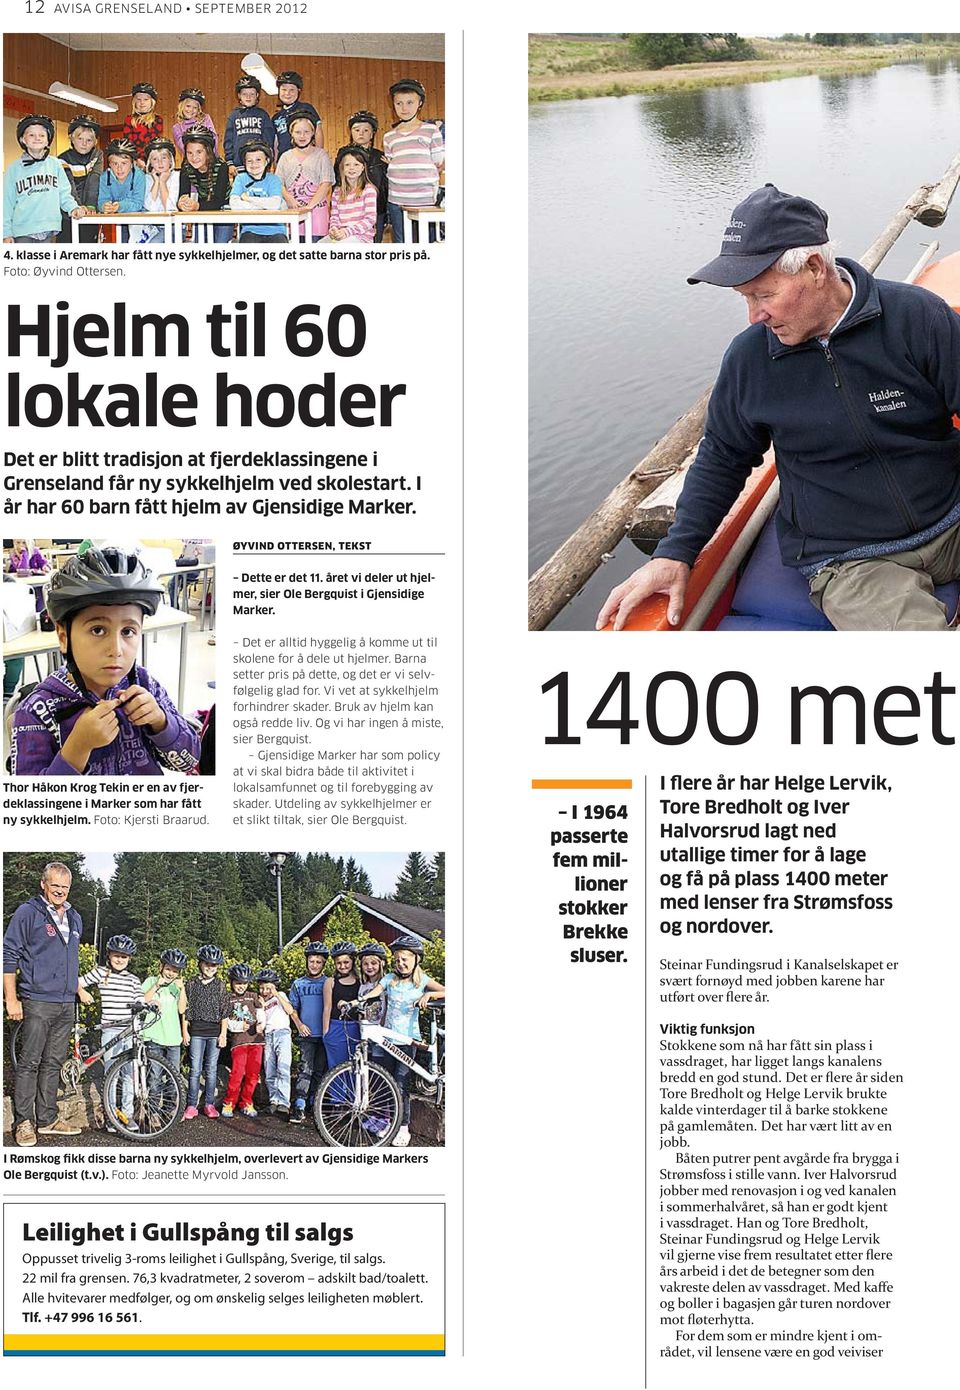 Øyvind Ottersen, tekst Dette er det 11. året vi deler ut hjelmer, sier Ole Bergquist i Gjensidige Marker. Thor Håkon Kr Tekin er en av fjerdeklassingene i Marker som har fått ny sykkelhjelm.